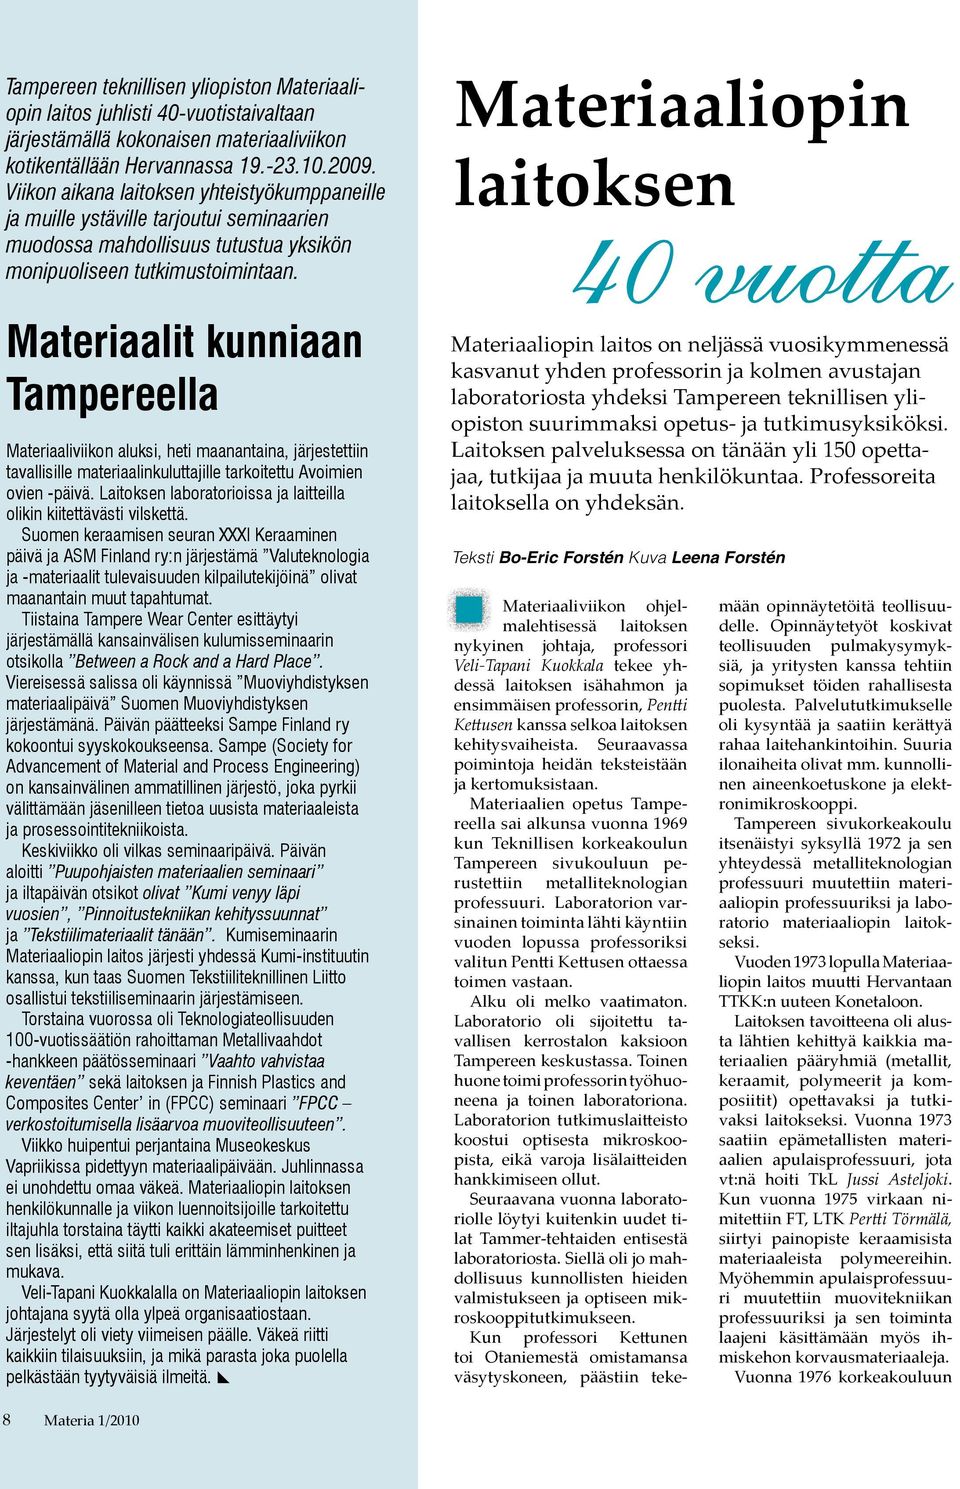 Materiaalit kunniaan Tampereella Materiaaliviikon aluksi, heti maanantaina, järjestettiin tavallisille materiaalinkuluttajille tarkoitettu Avoimien ovien -päivä.